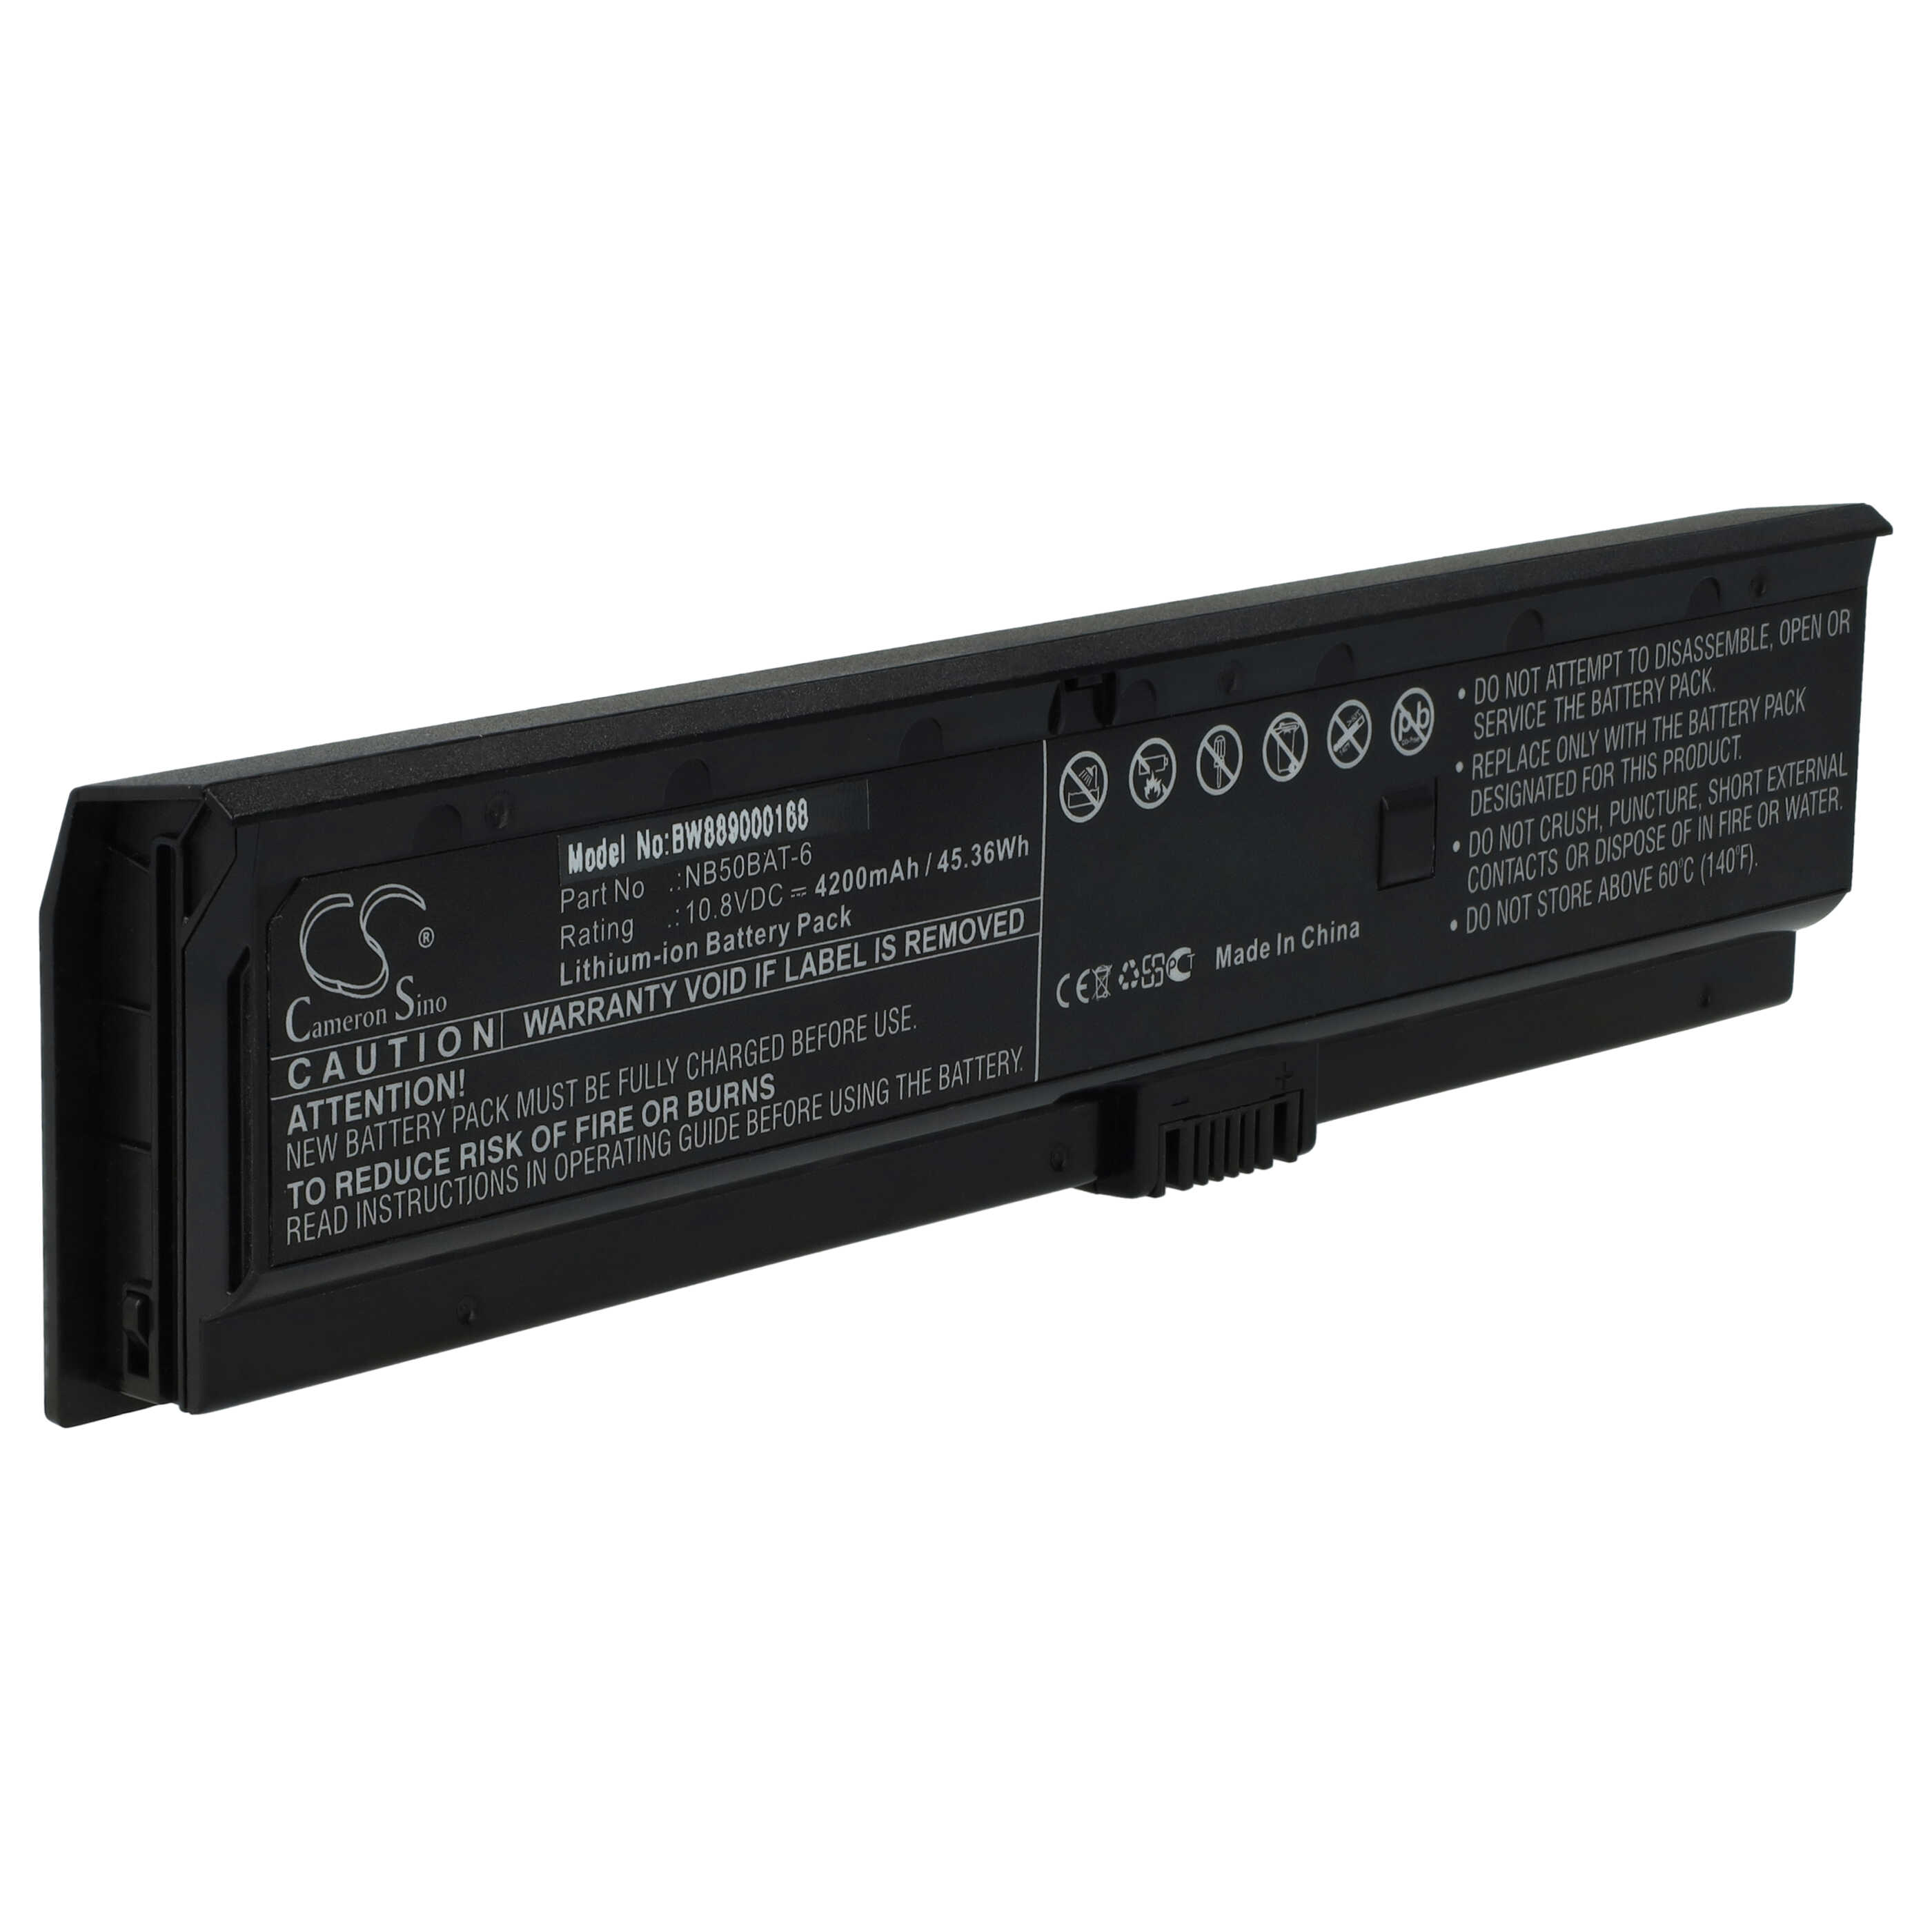 Batterie remplace Clevo NB50BAT-6 pour ordinateur portable - 4200mAh 10,8V Li-ion